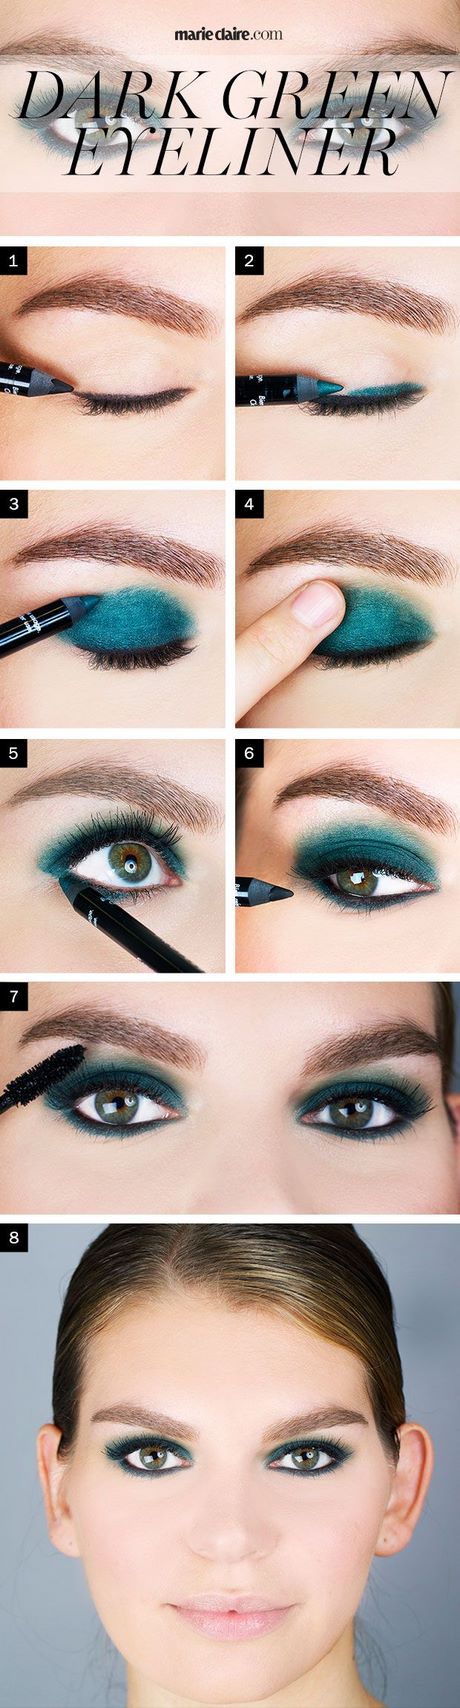 Groene ogen make-up tutorial pinterest